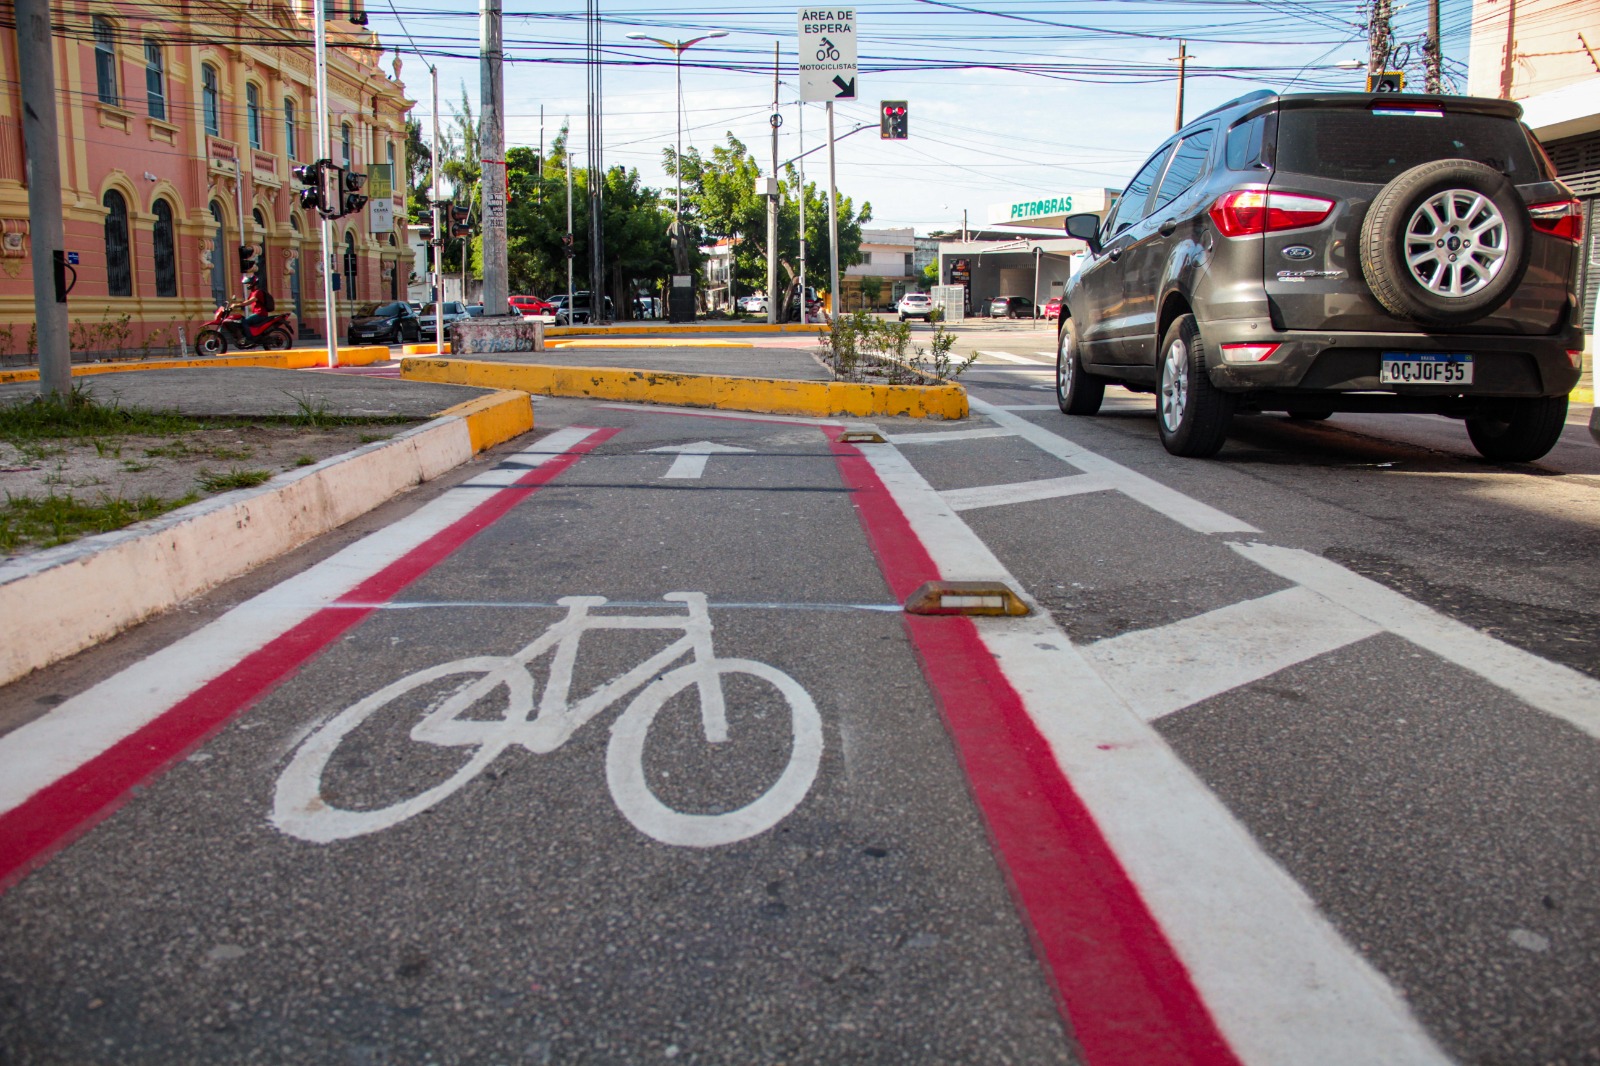 ciclofaixa sinalizada com simbolo de bicicleta pintado no asfalto